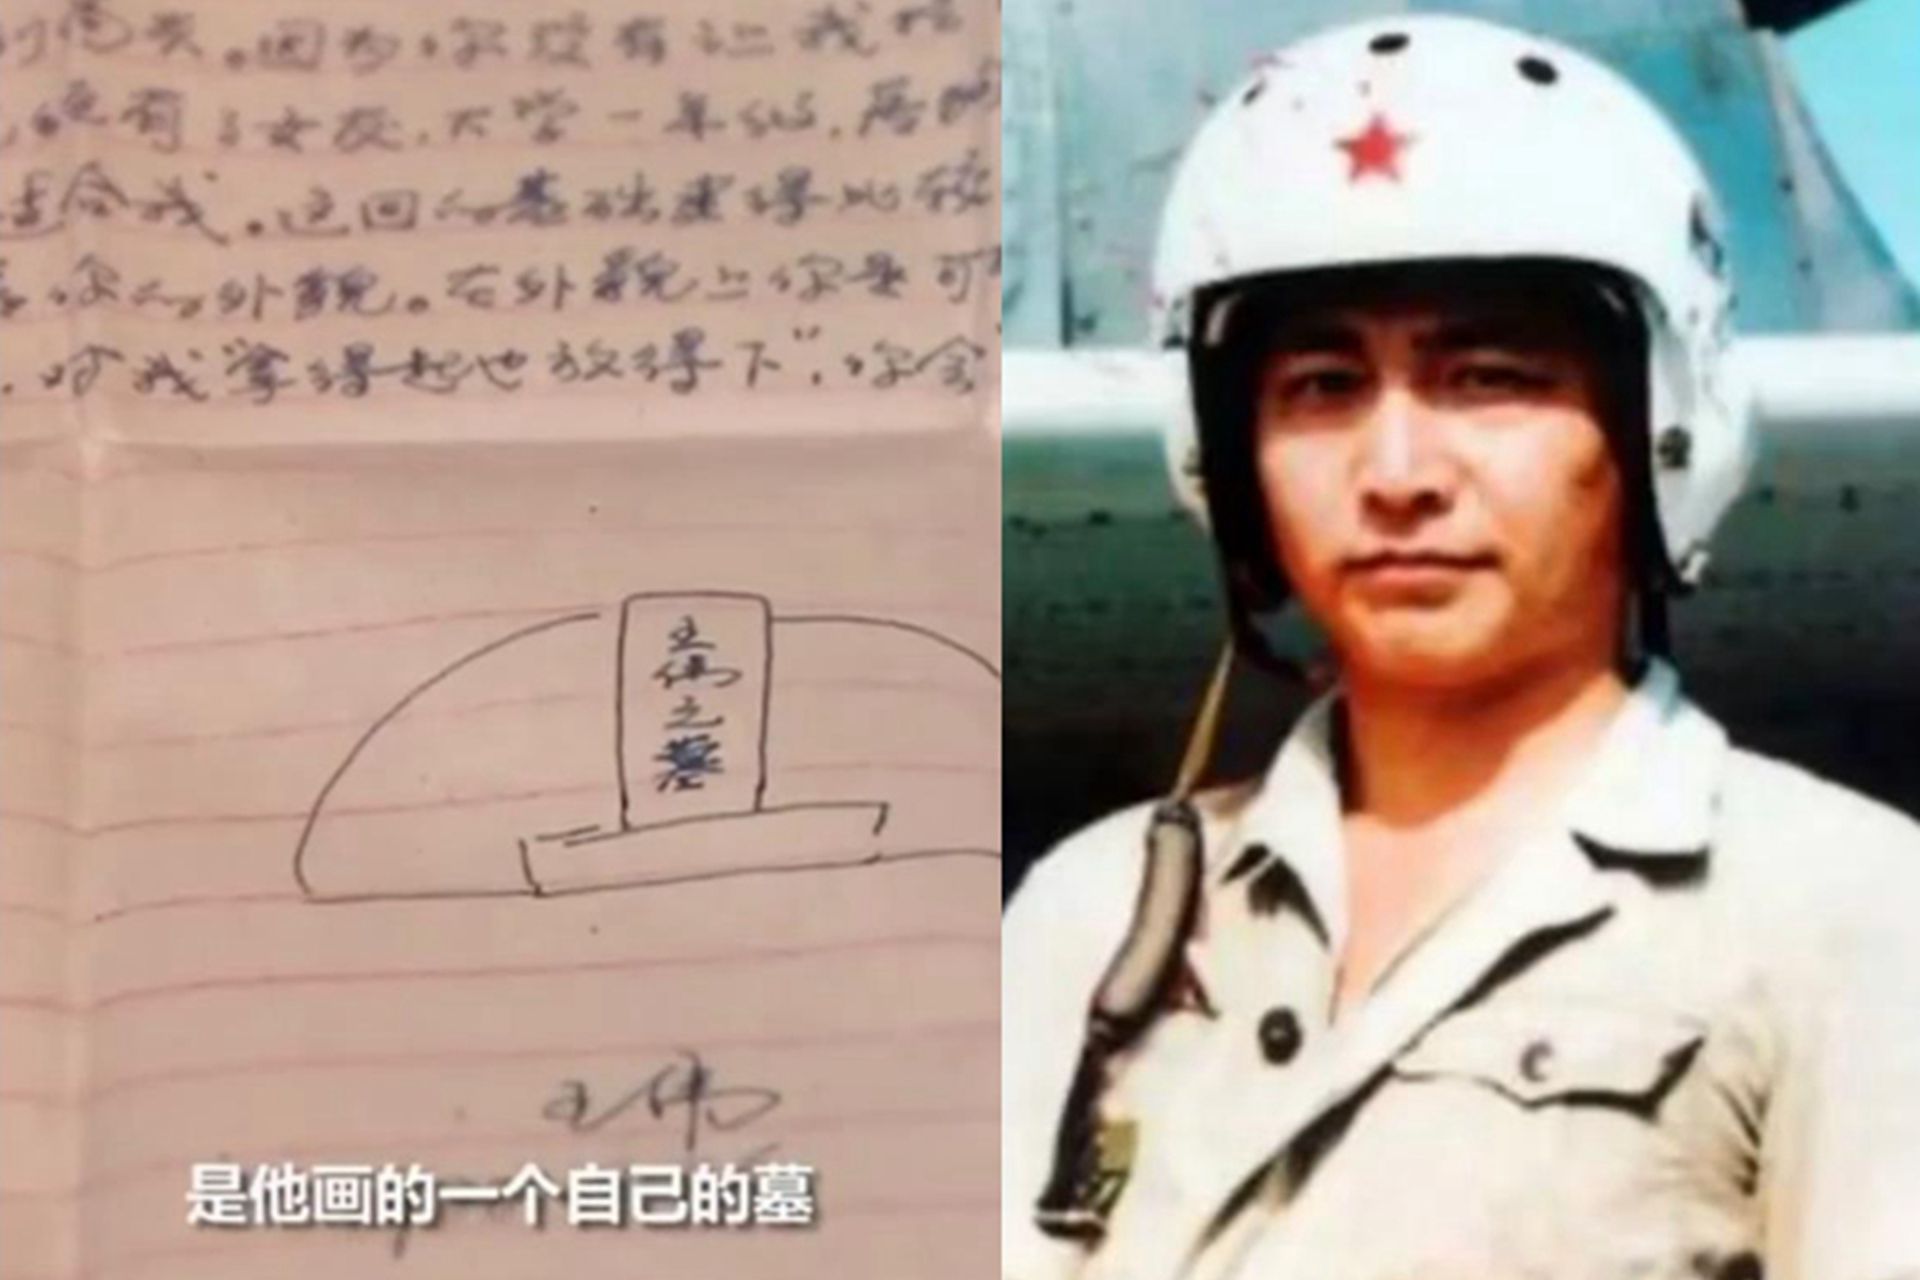 中国首个歼-10女飞行员牺牲一周年 回顾她最美瞬间_综合_图片_航空圈